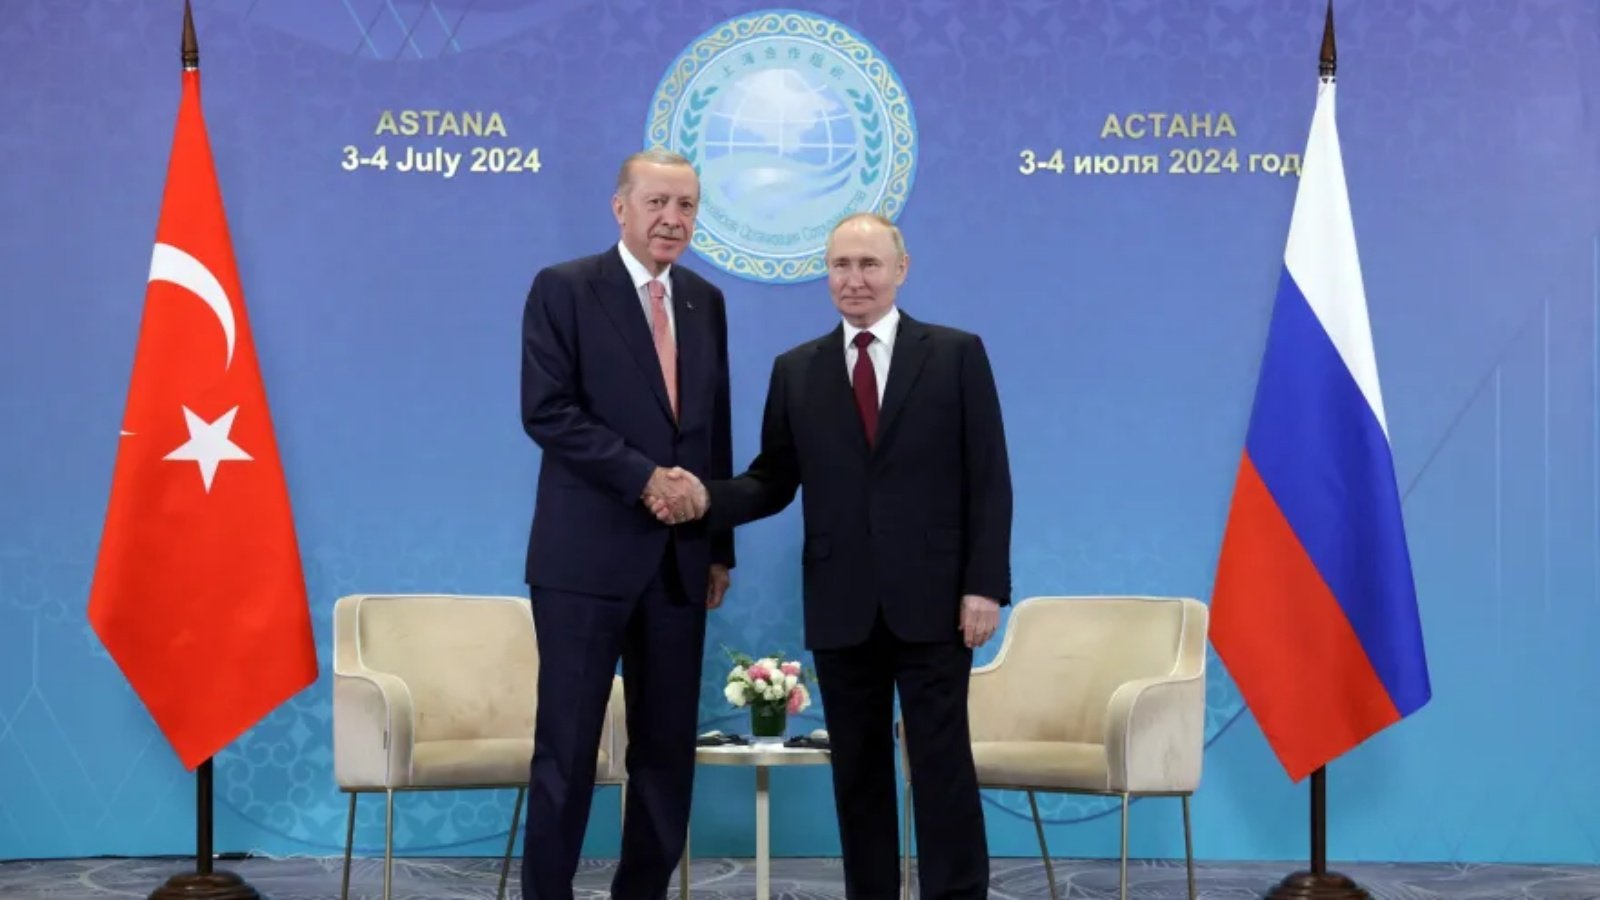 الرئيس الروسي فلاديمير بوتين في لقاء مع الرئيس التركي رجب طيب أردوغان على هامش قمة قادة الدول الأعضاء في منظمة شنغهاي للتعاون (SCO) في أستانا في 3 تموز (يوليو) 2024.